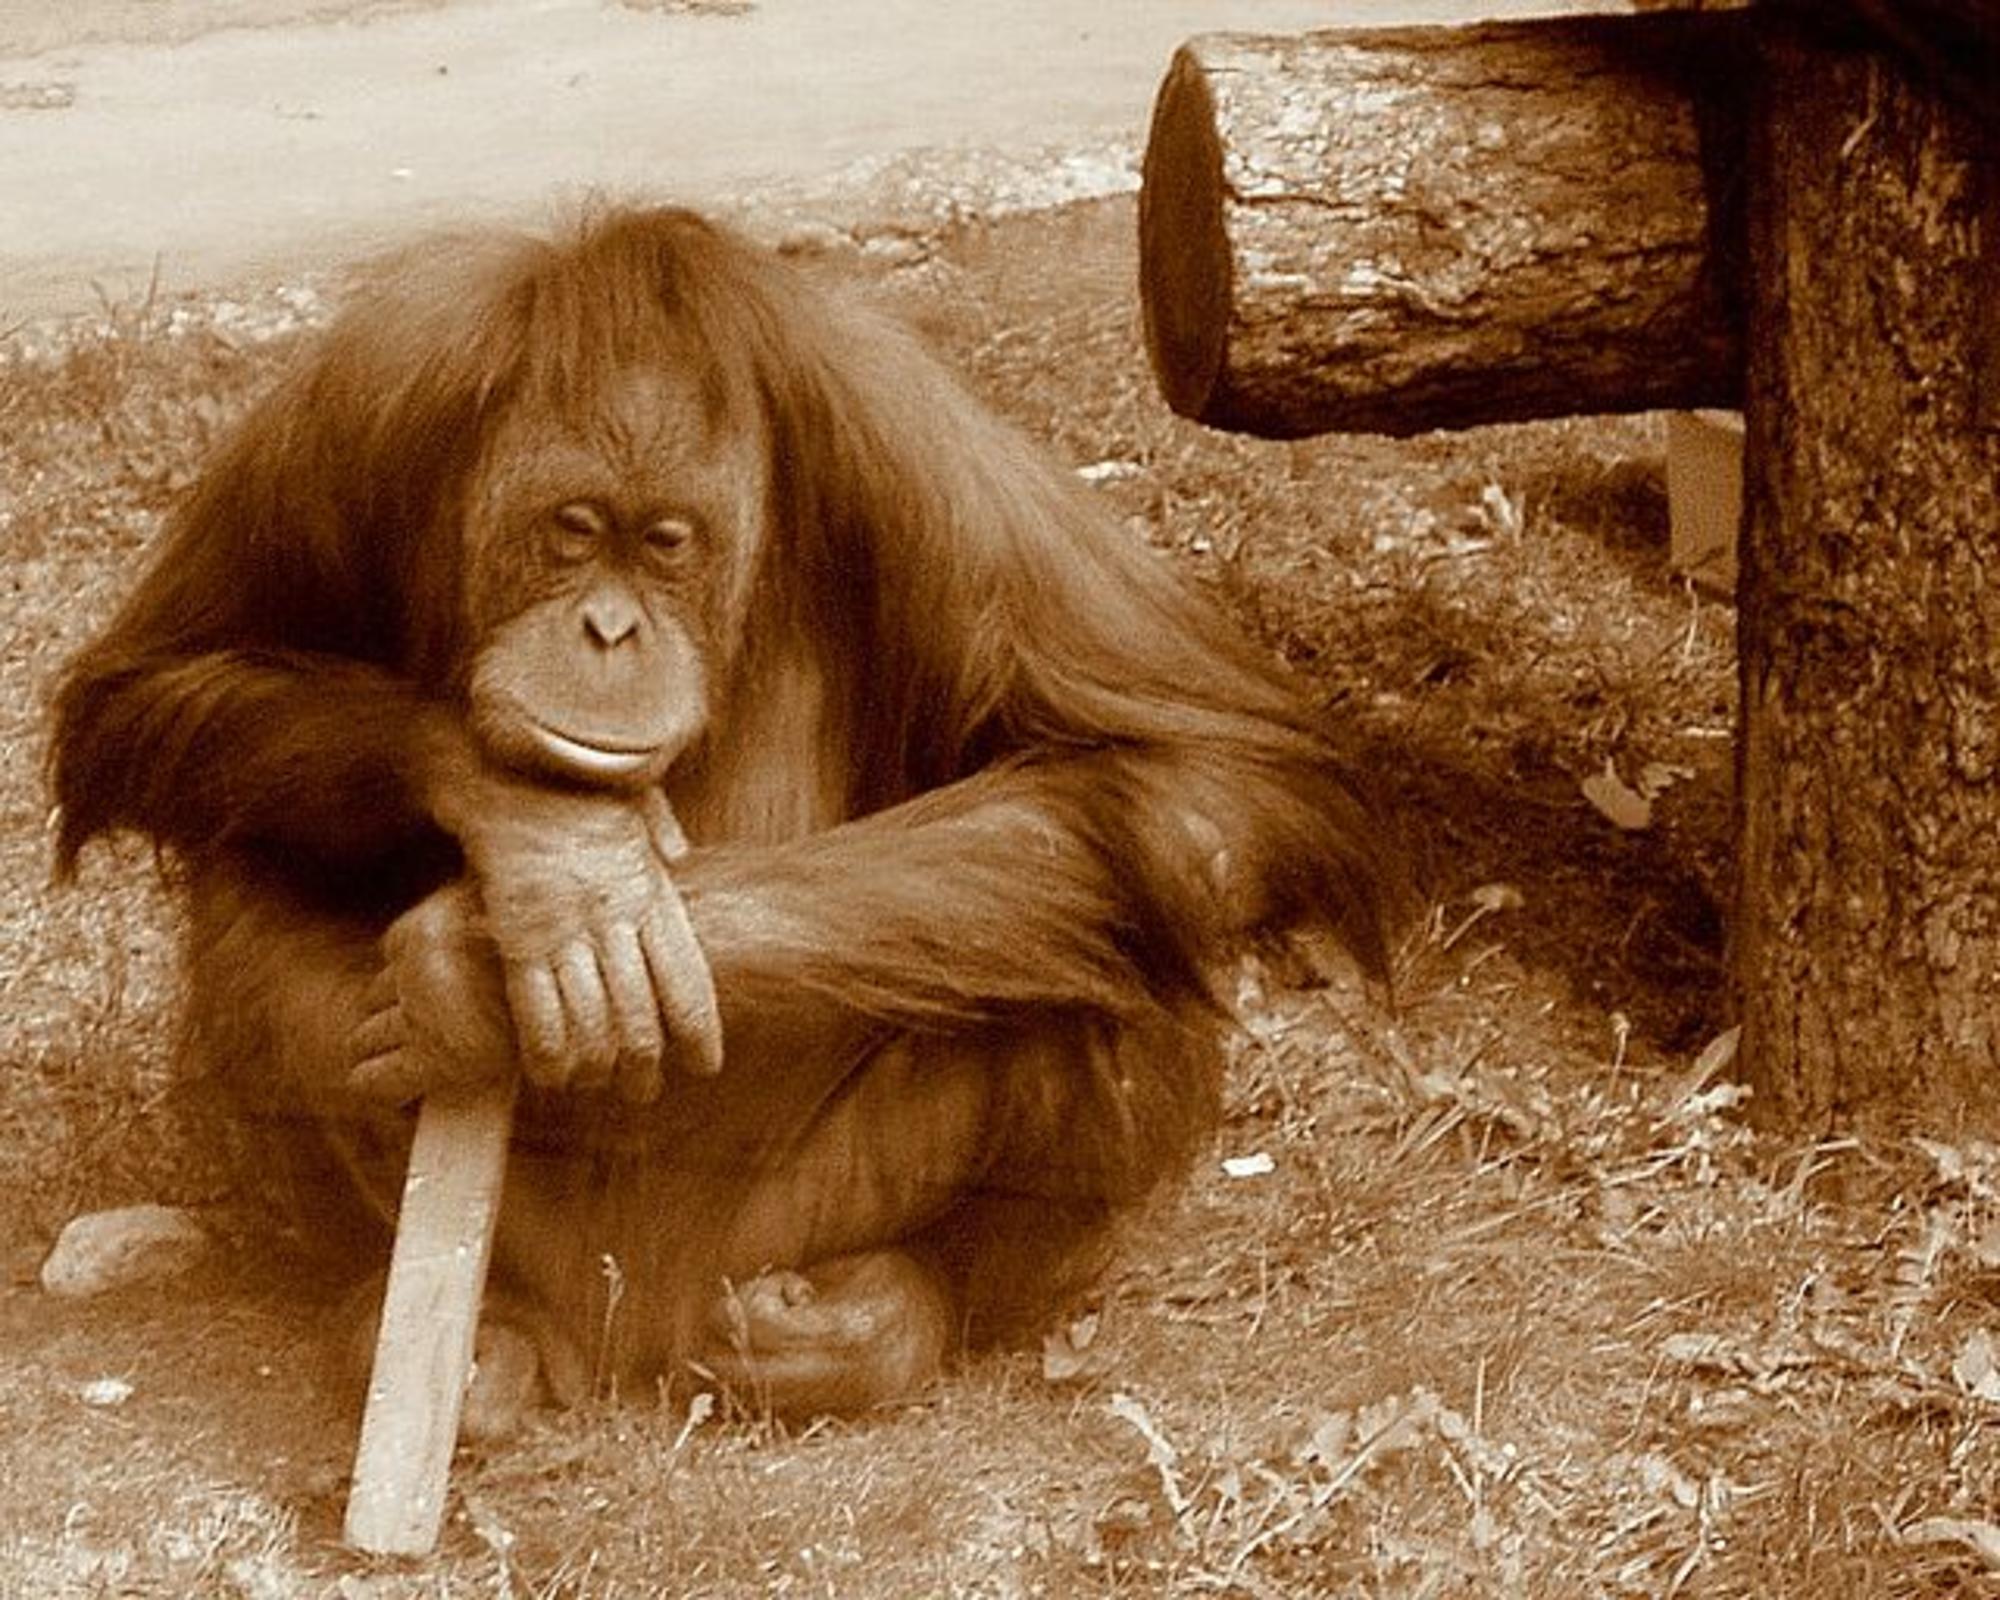 Orangután pensando